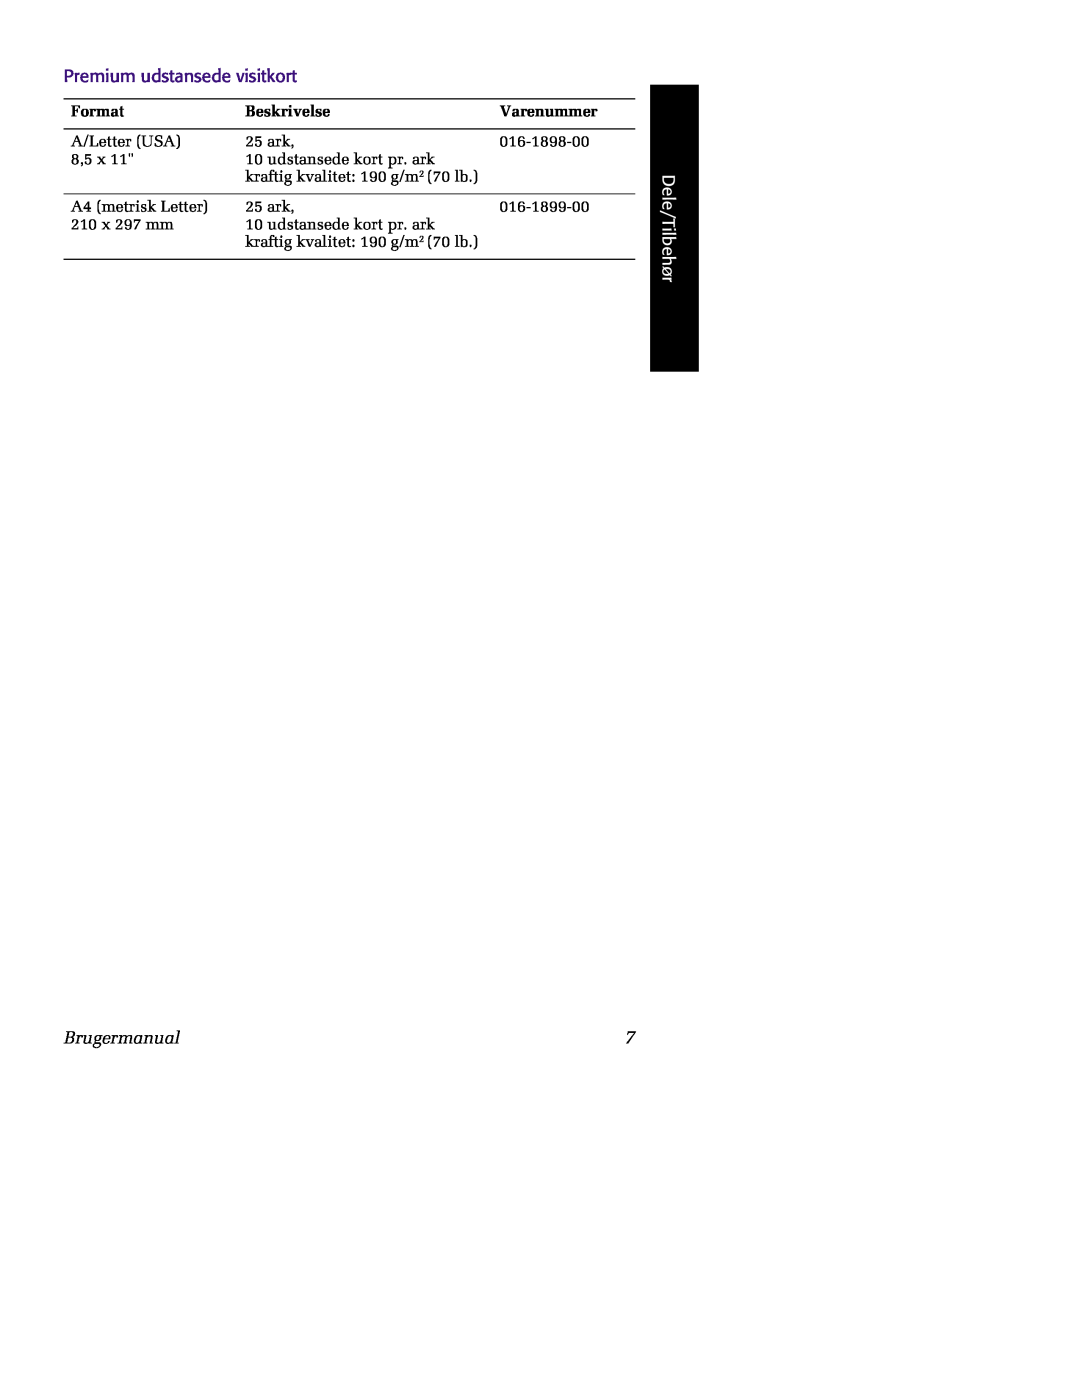 Tektronix 860 Premium udstansede visitkort, Dele/Tilbehør, Brugermanual, Format, Beskrivelse, Varenummer 